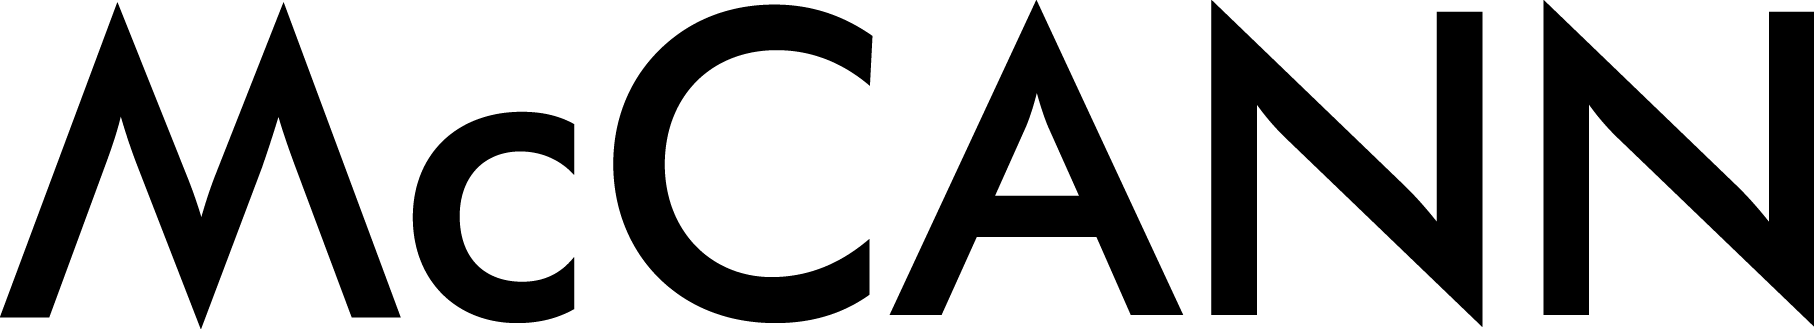 mccann-logo.png